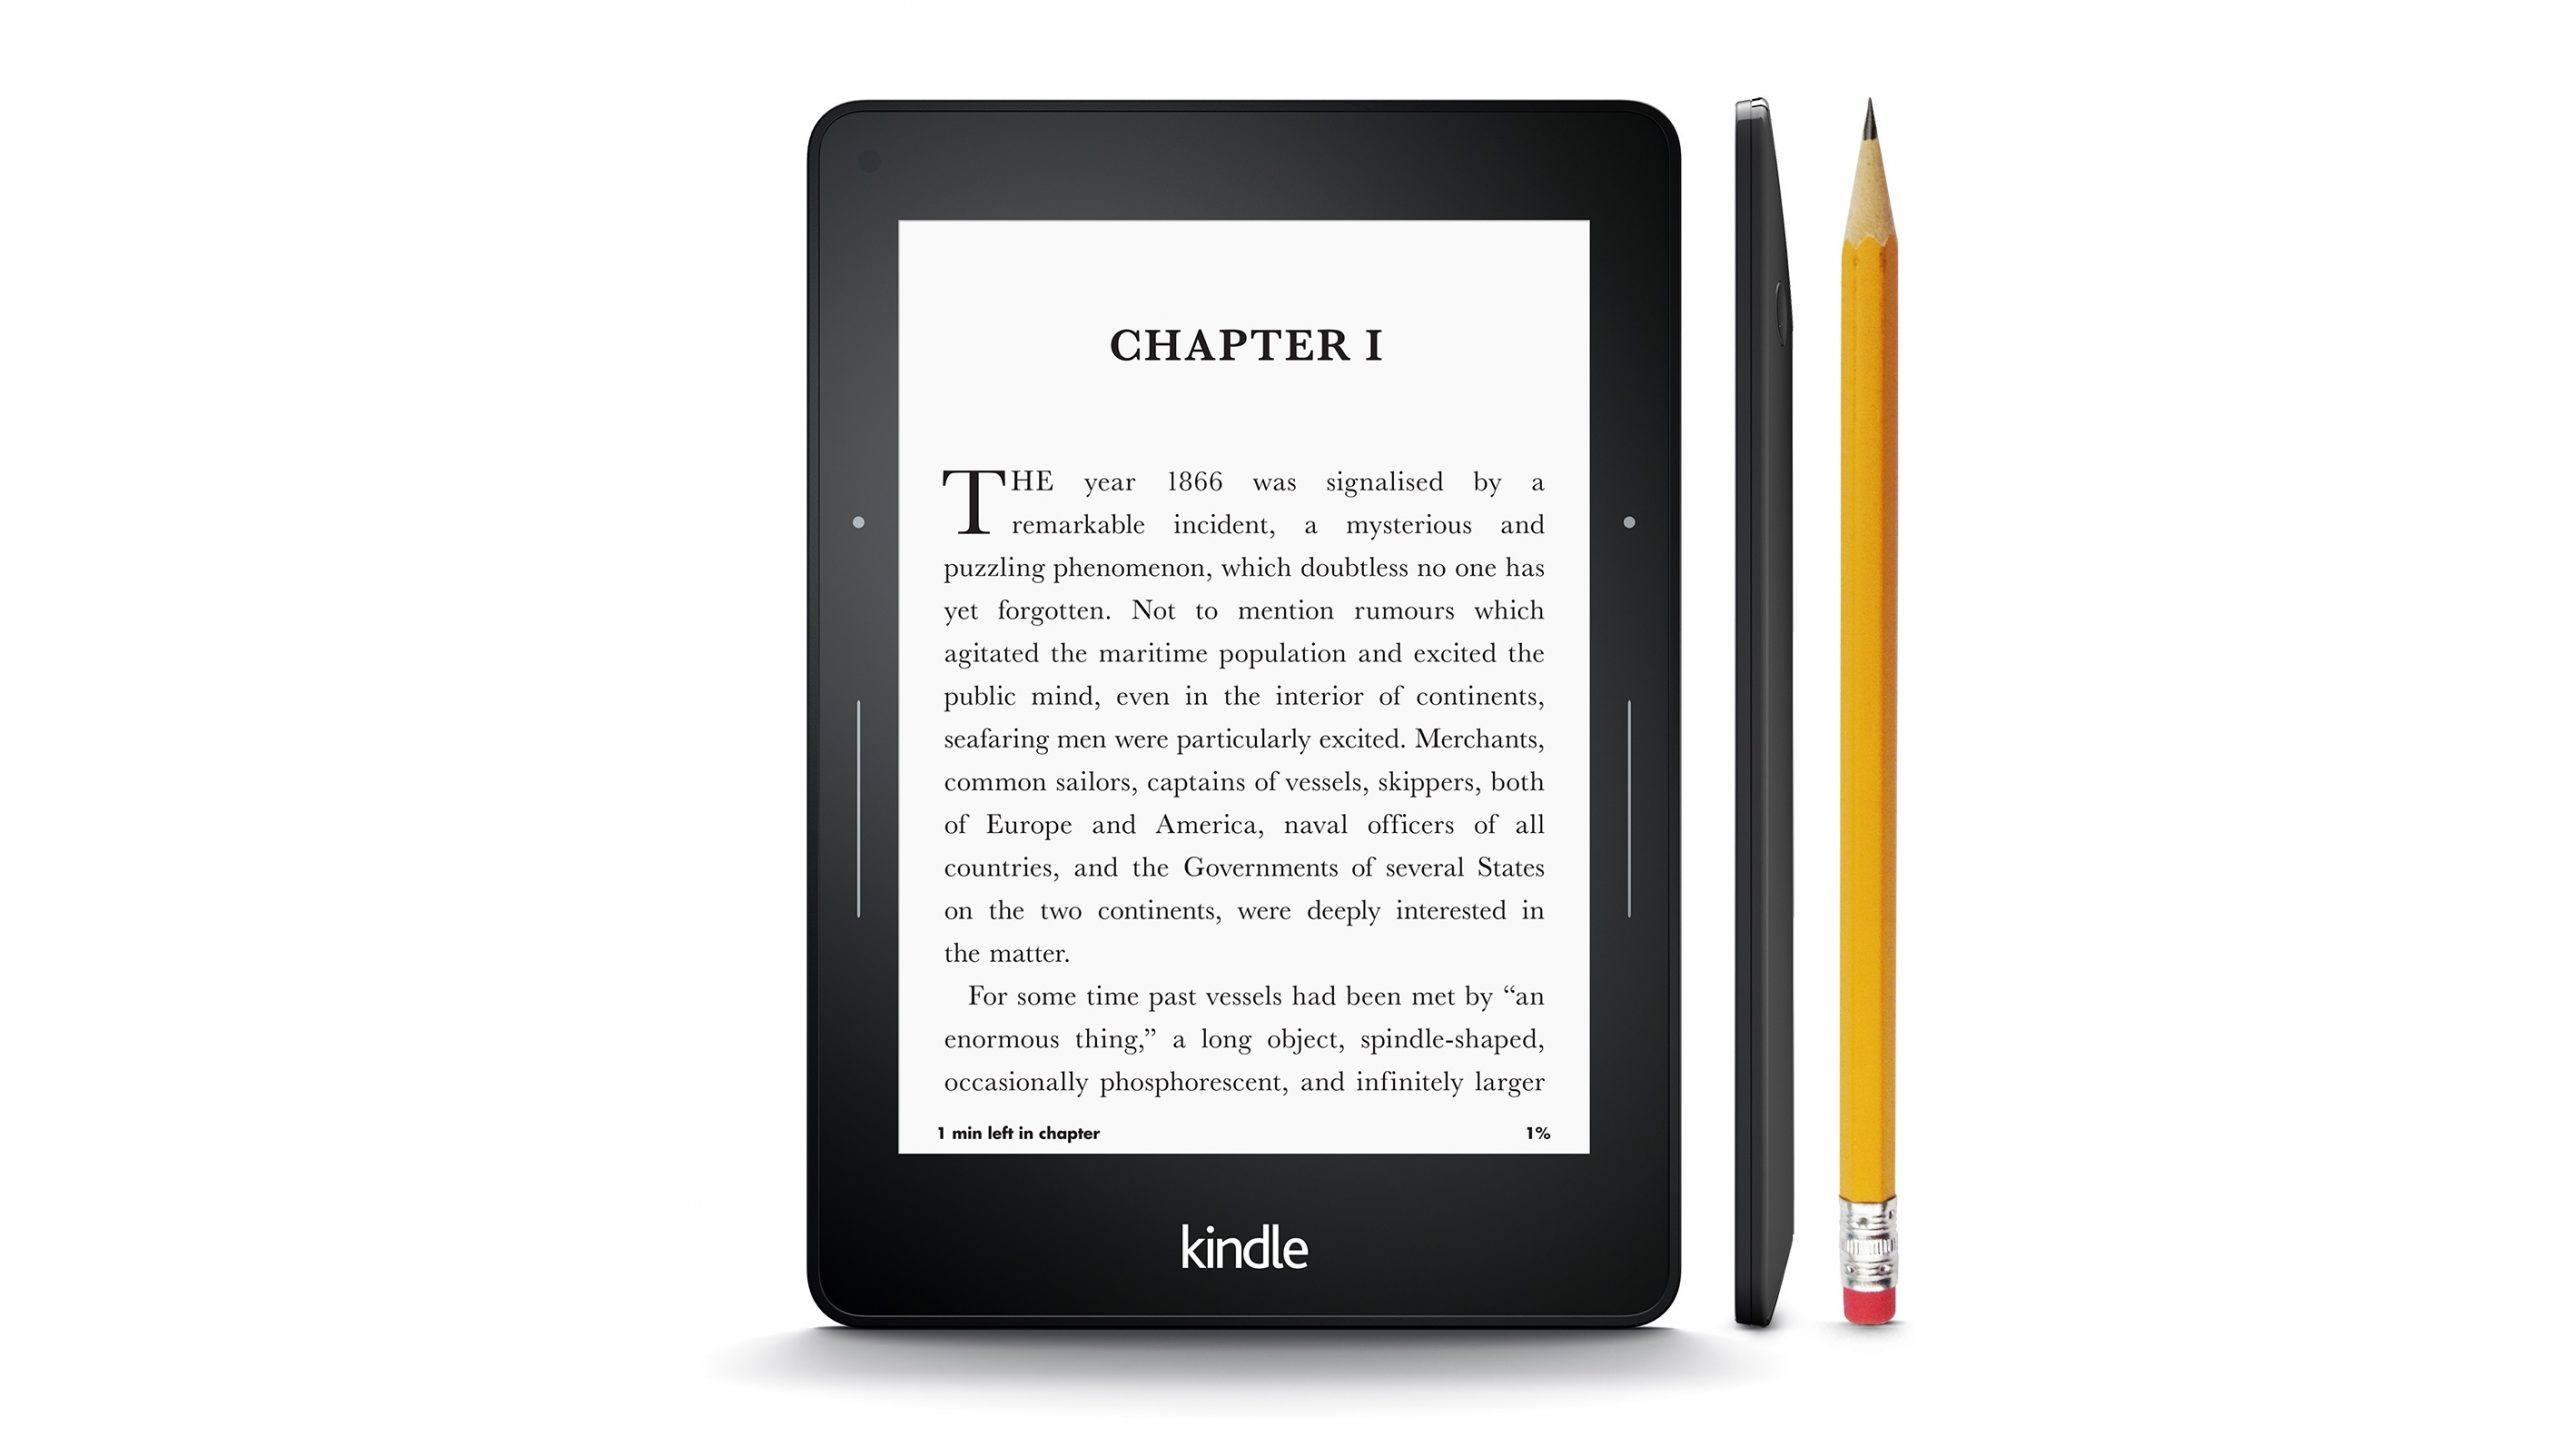 Amazon presenta nuevos lectores electrónicos Kindle y Kindle Voyage